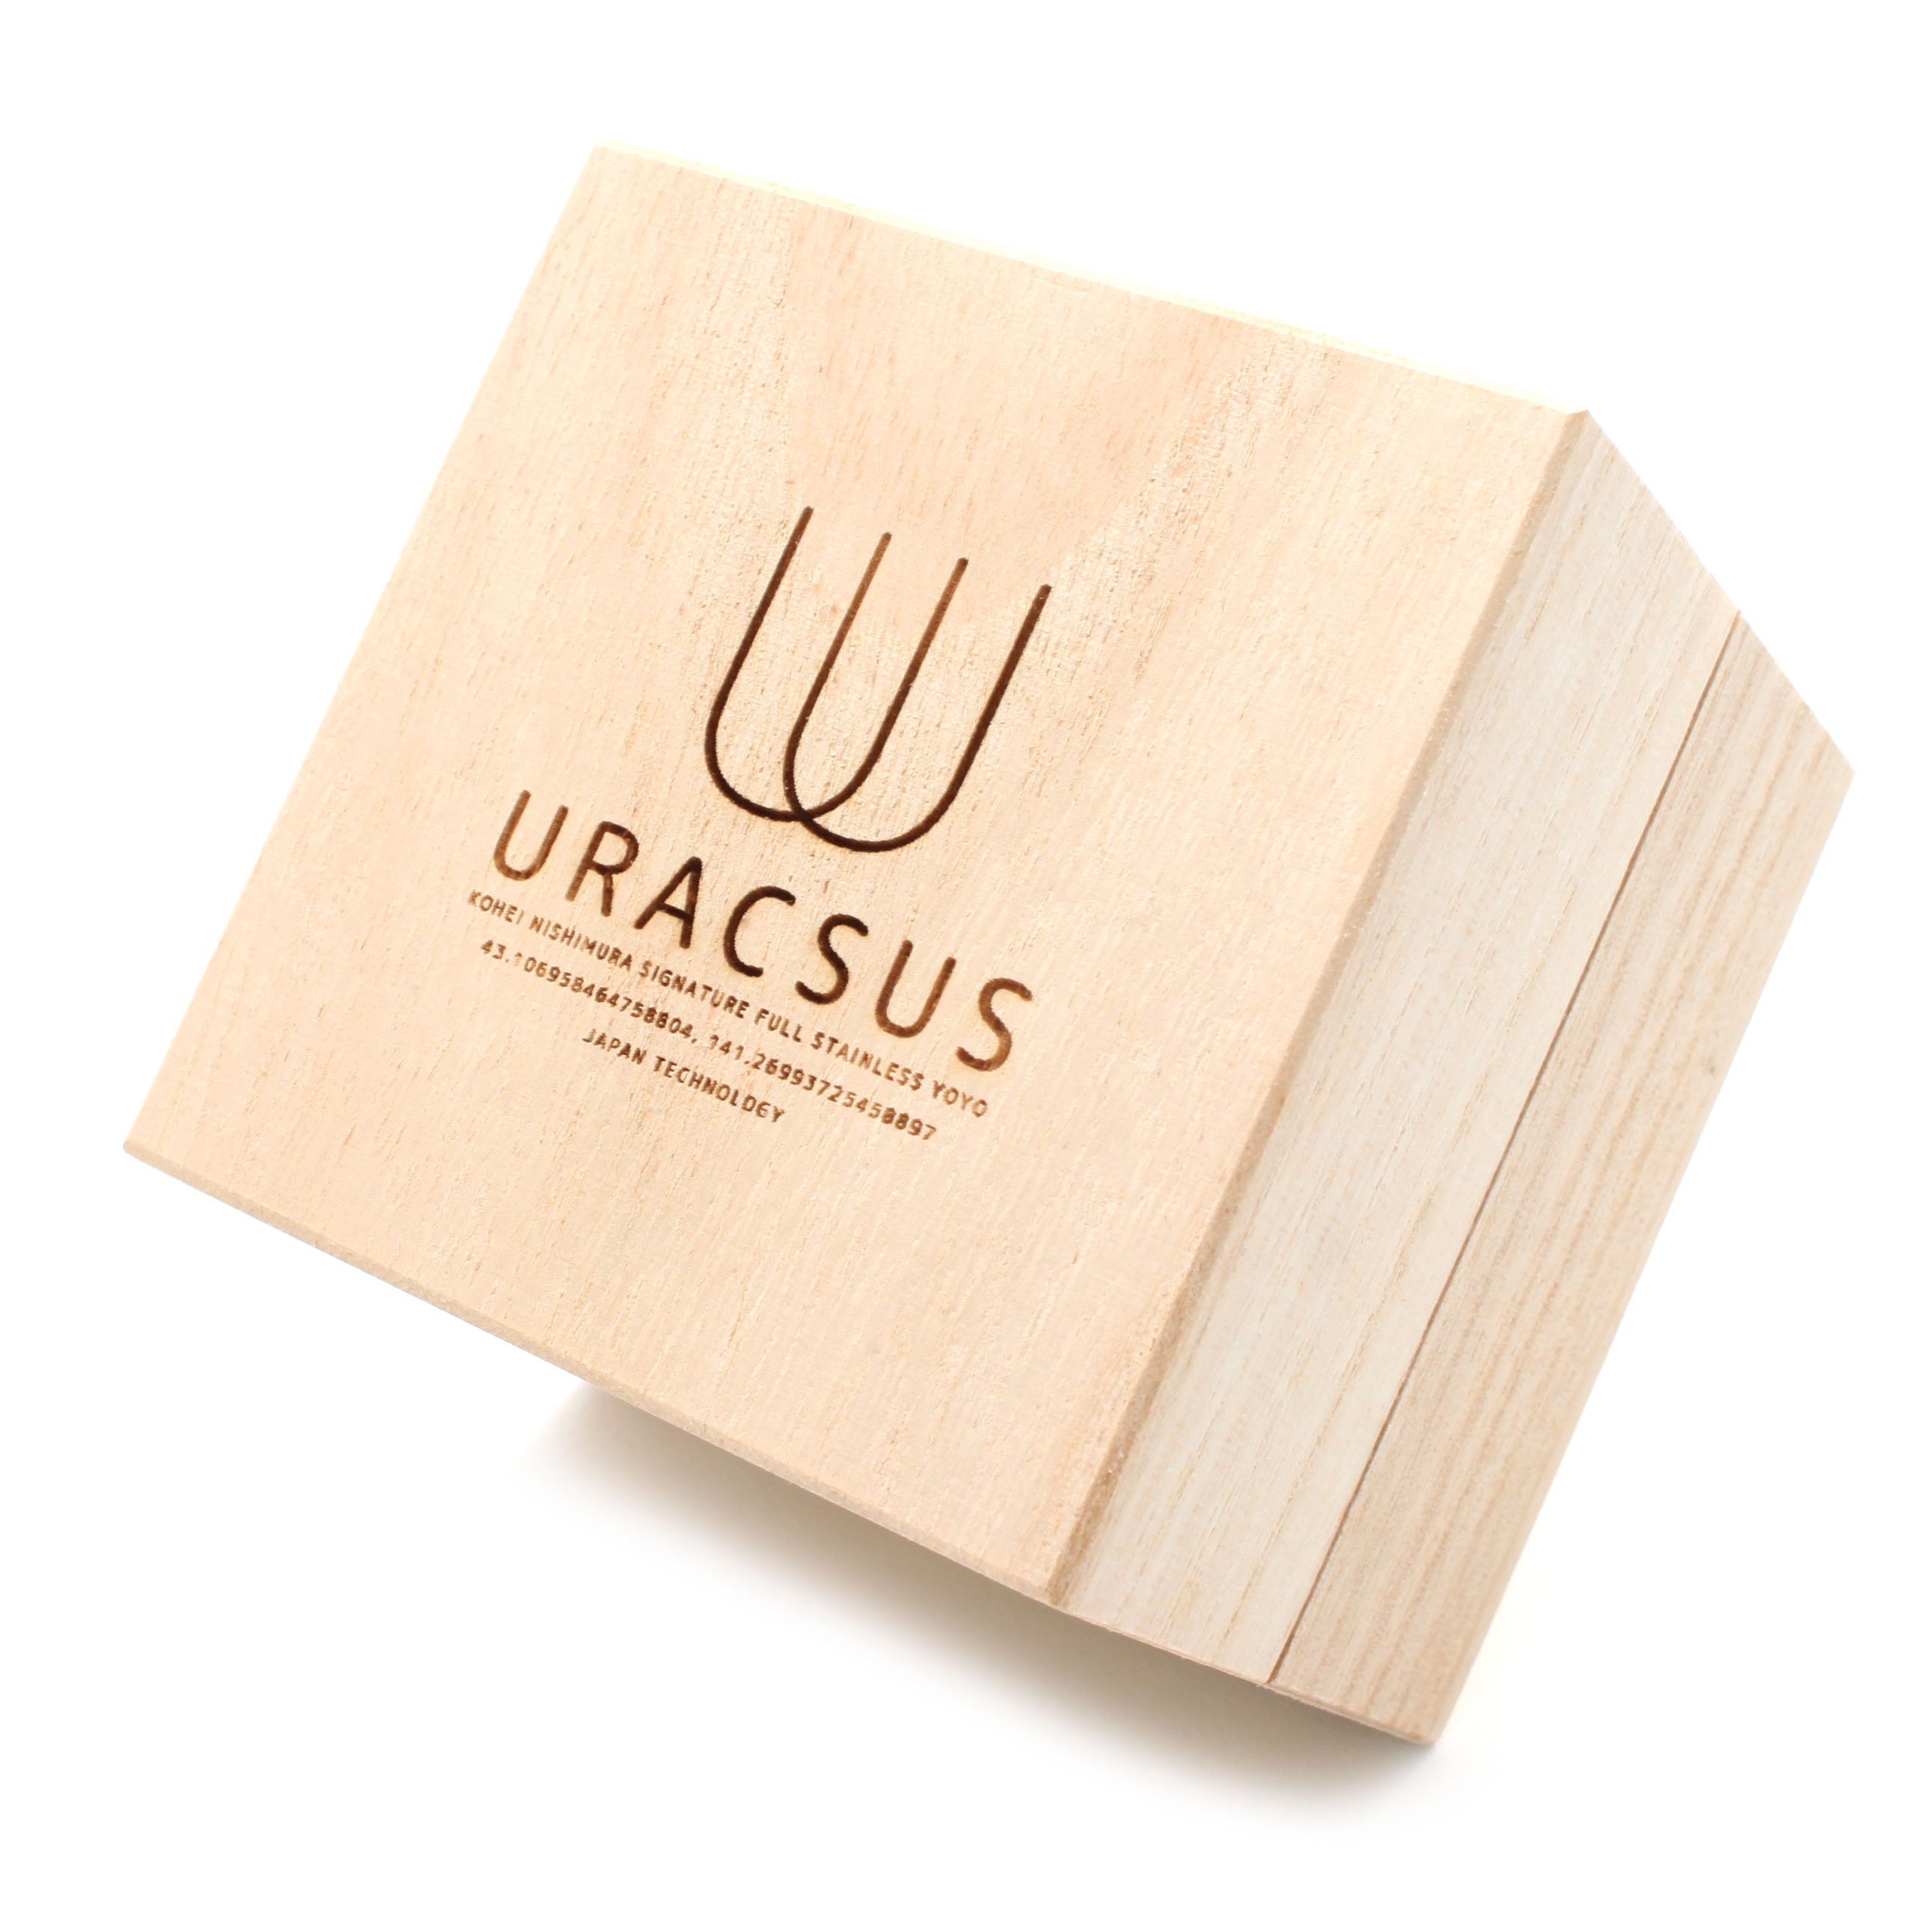 Uracsus